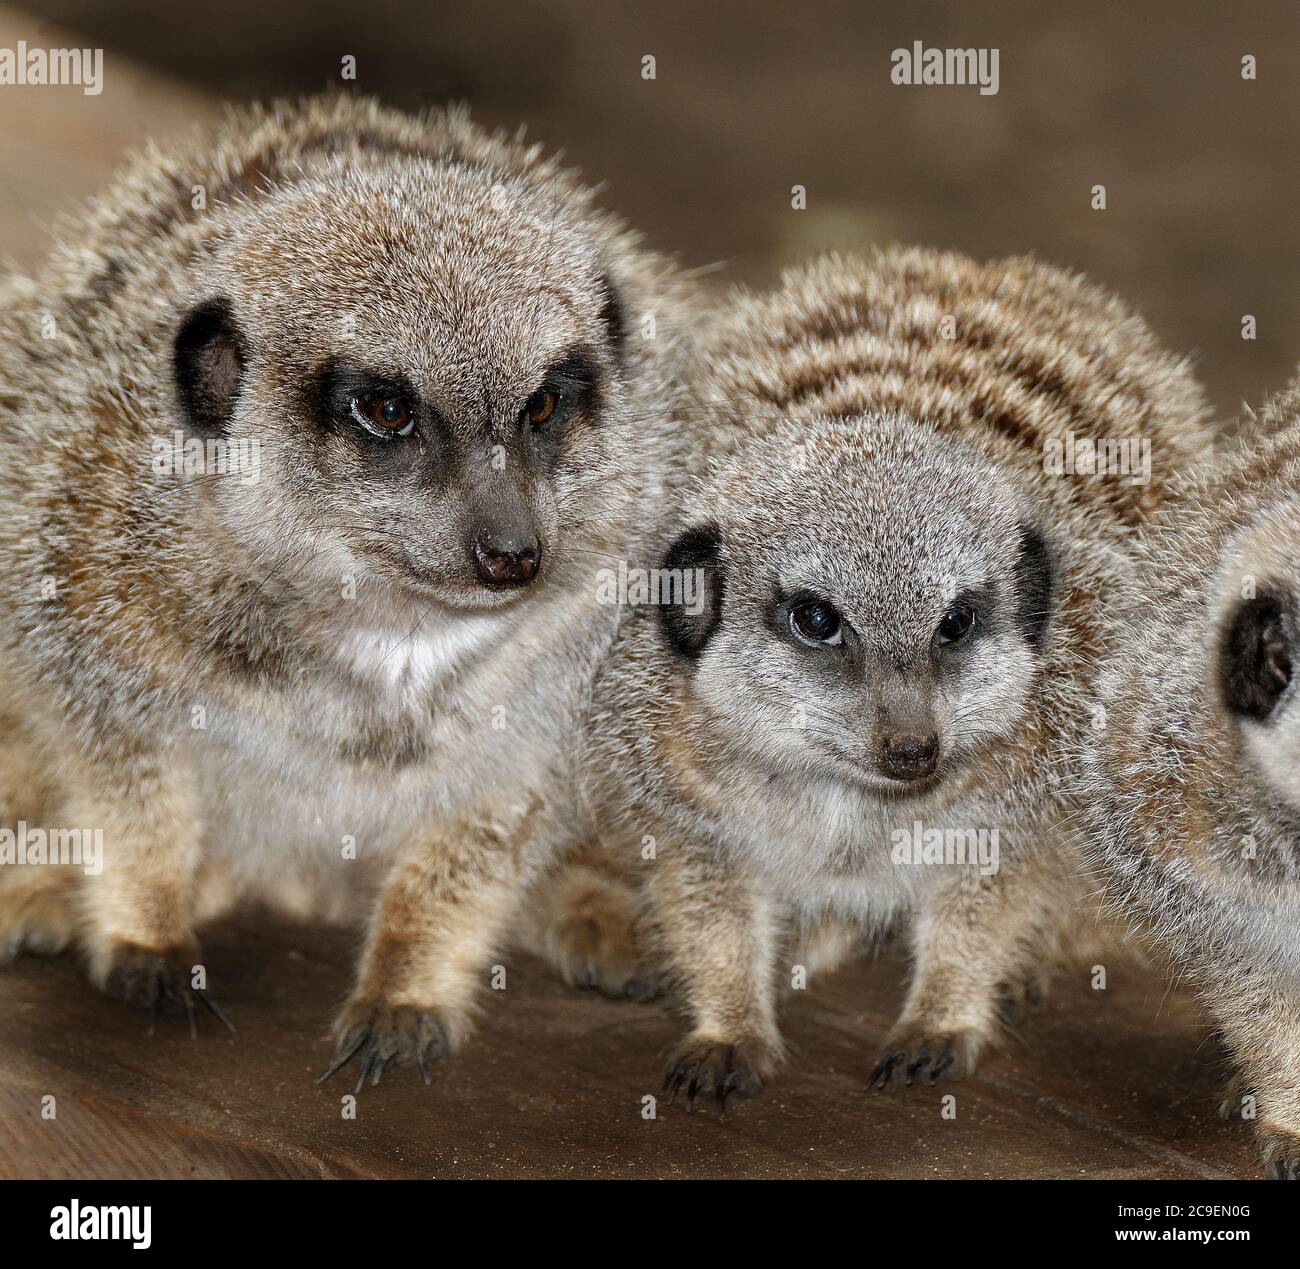 Il meerkat (Suricata suricatta) o suricato è un piccolo carnivoro della famiglia delle Mongoose. È l'unico membro del genere Suricata. Foto Stock